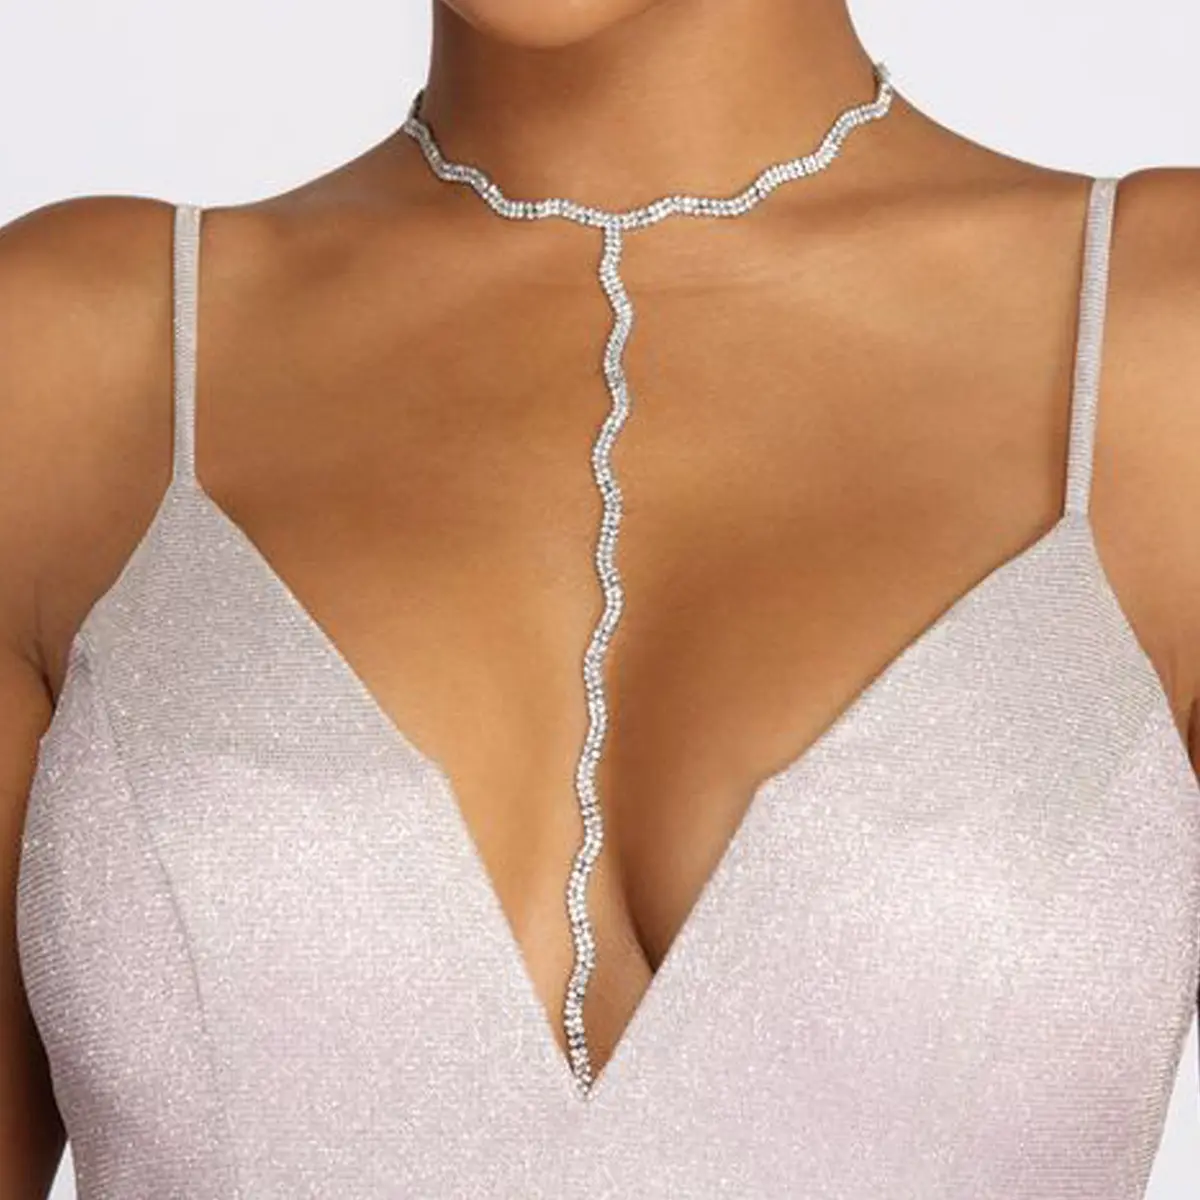 Sıcak güzel kızlar moda gösterisi Ftv gece yarısı seksi erotik Bling ayarlanabilir Rhinestone elmas Glitter vücut zincirleri takı iç çamaşırı